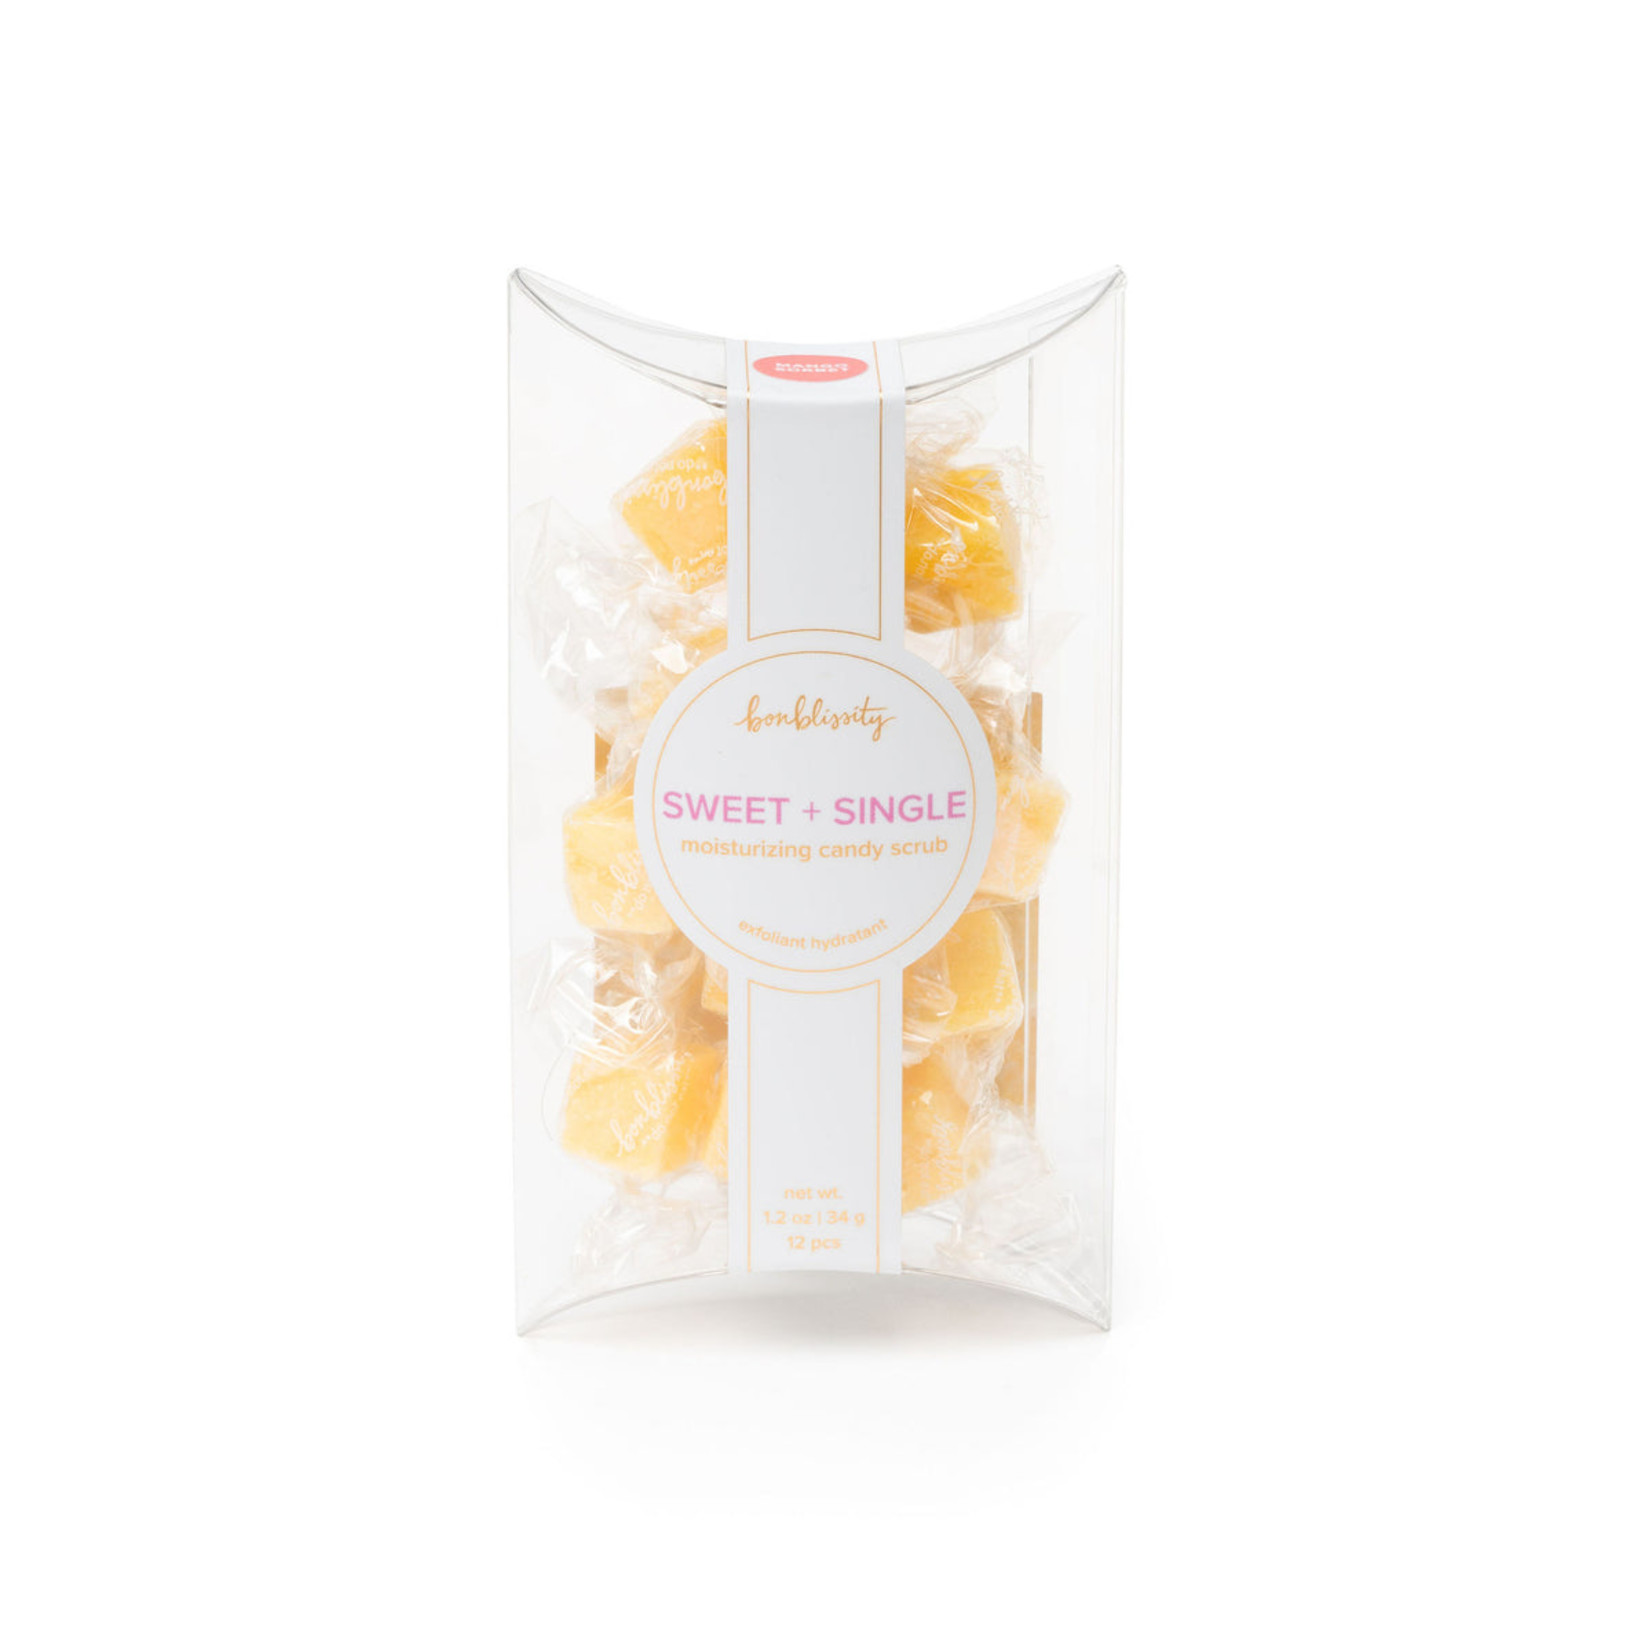 Bonblissity - Sugar Cube Candy Scrub - Mango Sorbet